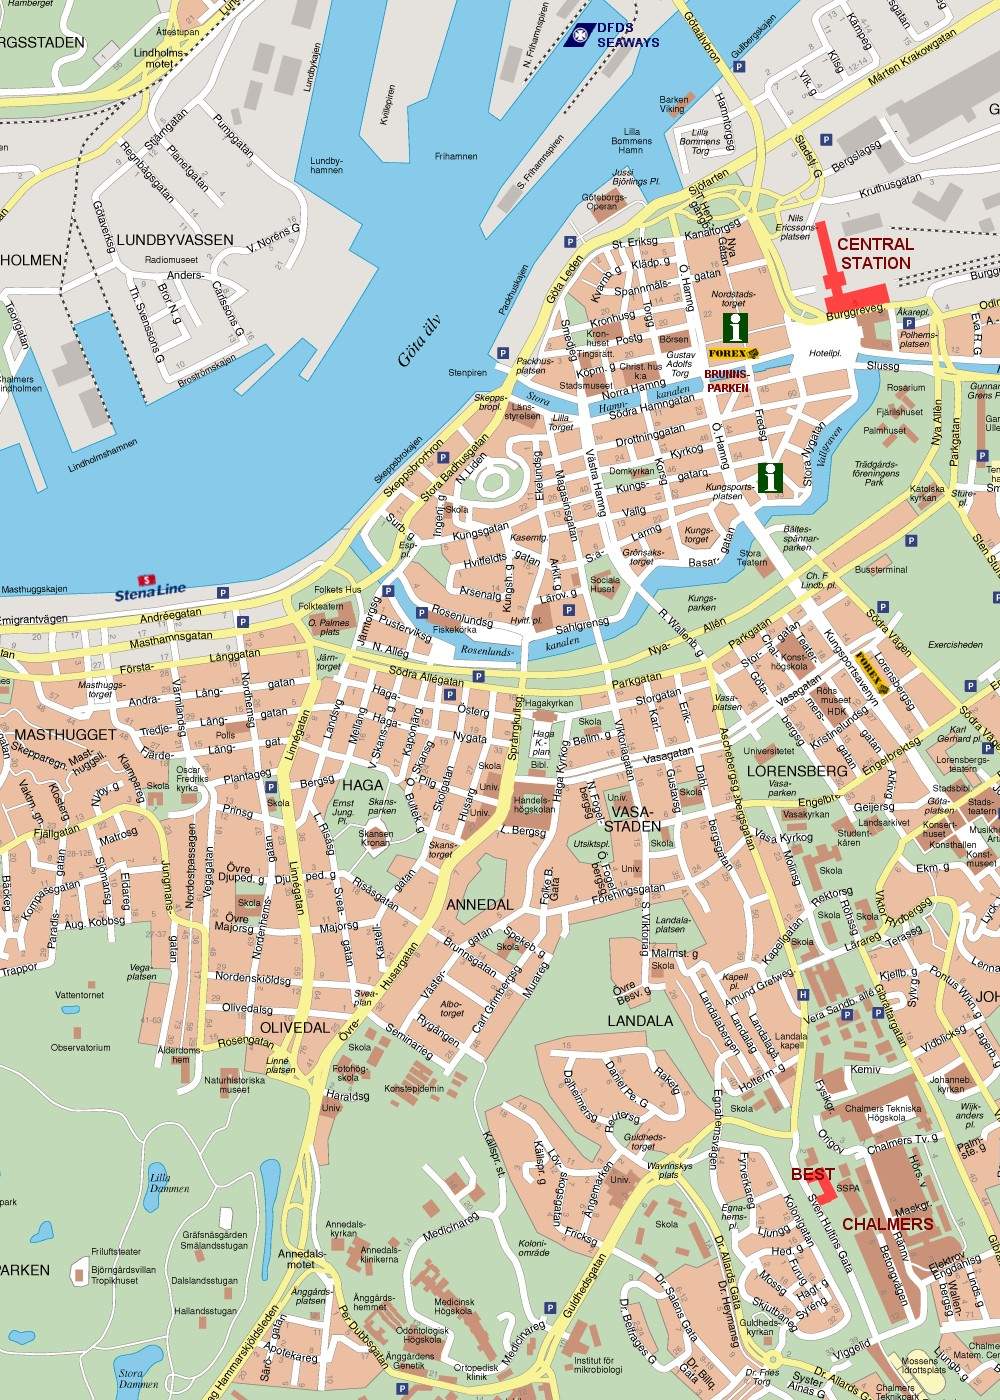 Stadtplan von Göteborg | Detaillierte gedruckte Karten von Göteborg